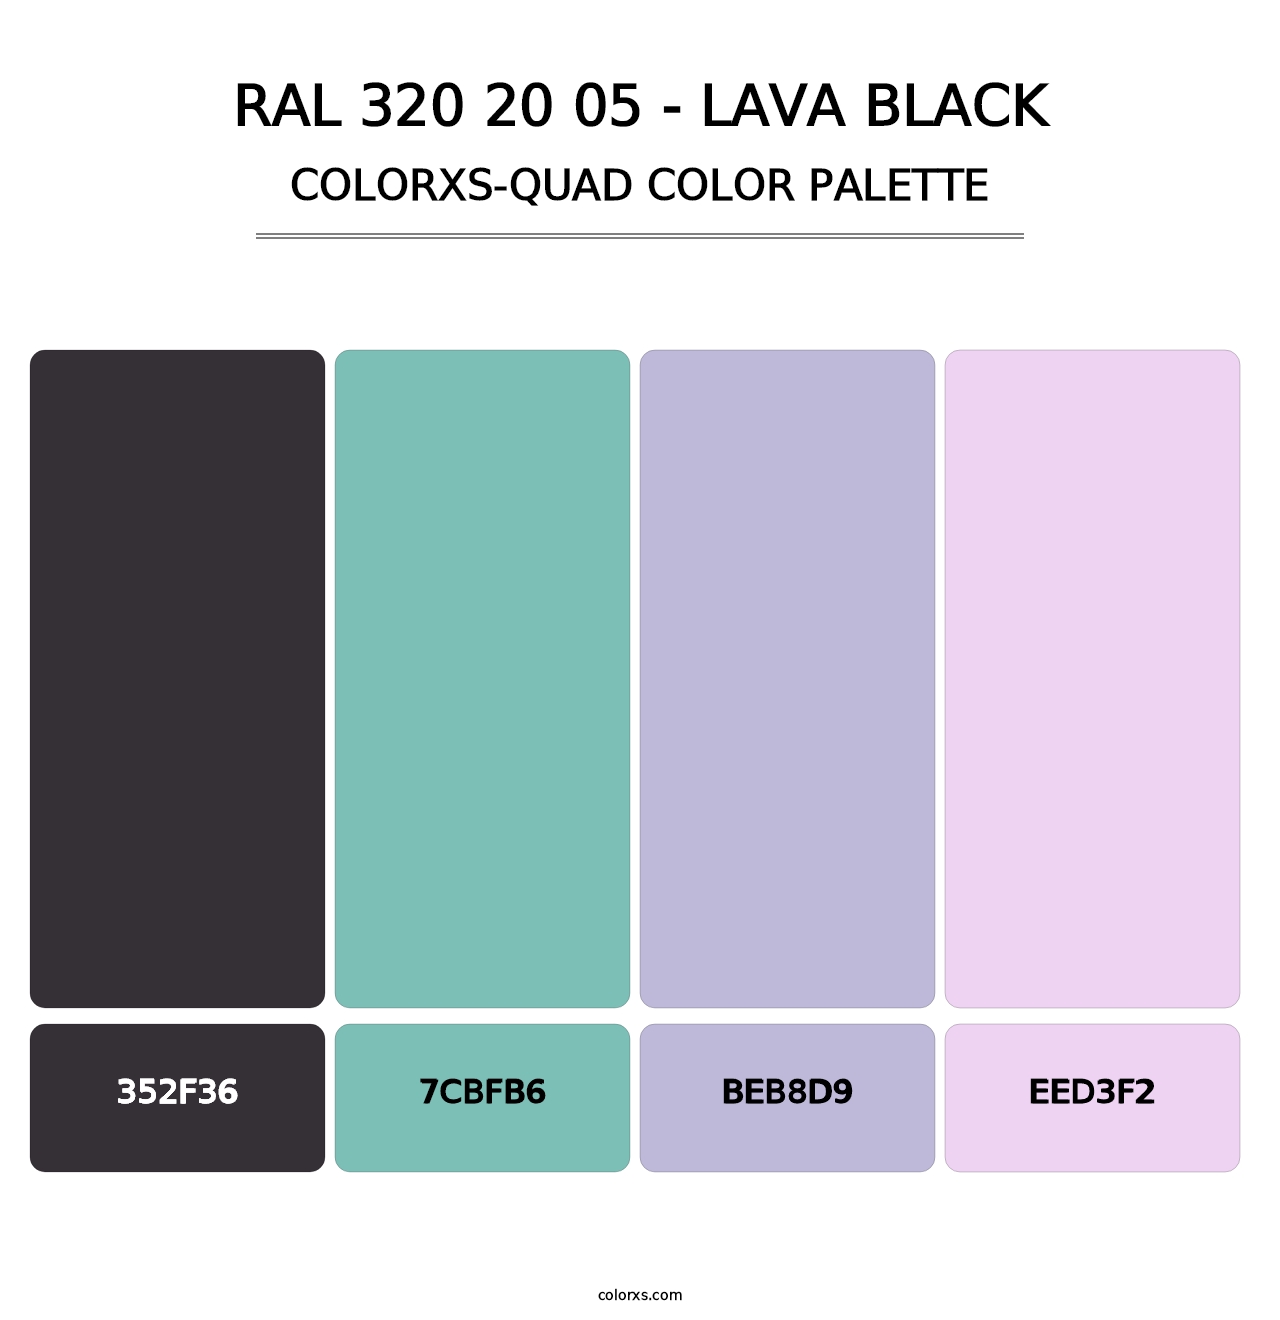 RAL 320 20 05 - Lava Black - Colorxs Quad Palette